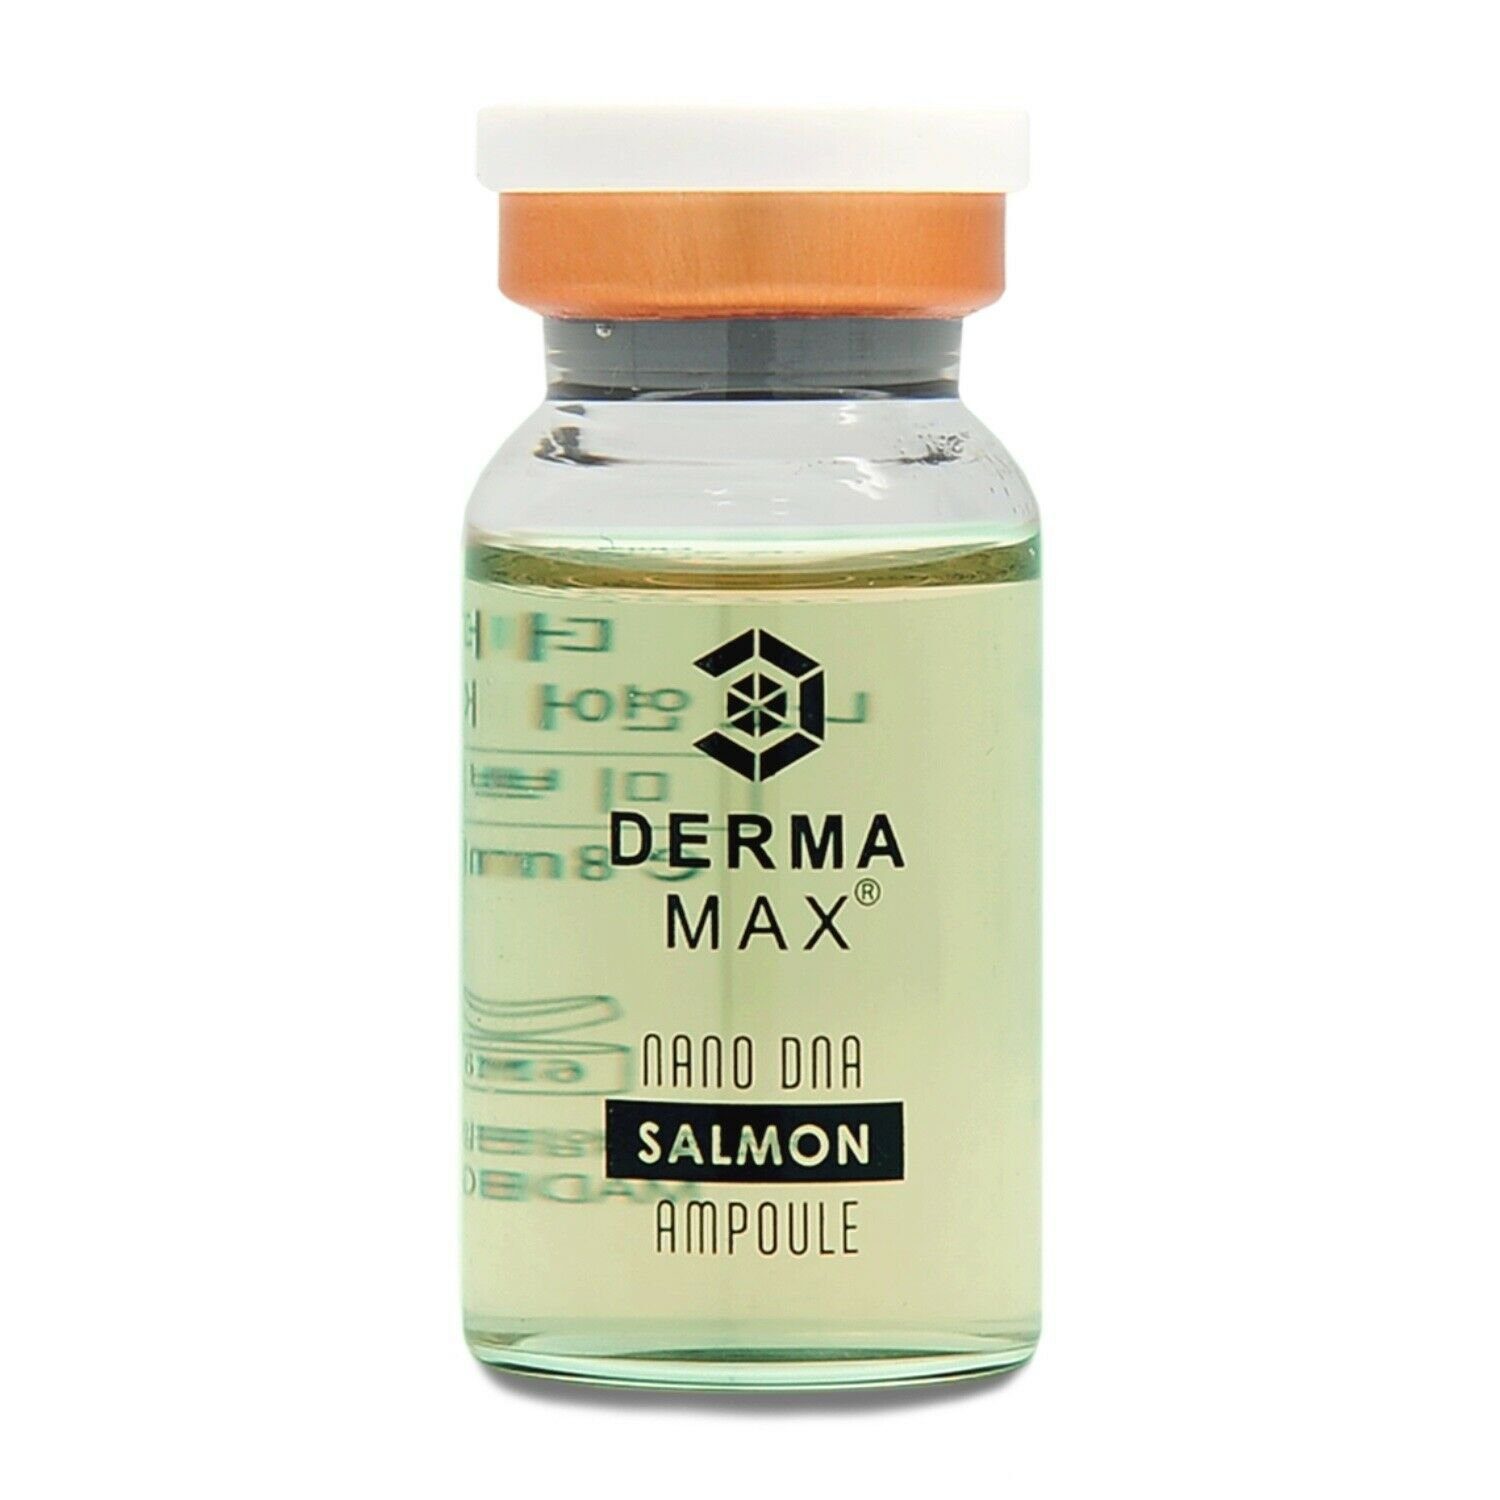 Dermamax Gesichtsserum DERMAMAX Booster Serum Premium Treatment Ampulle Ideal für Microneedling mit Dermaroller, Dermapen oder MTS speziell für Problemhaut SALMON 8ml | Gesichtsseren